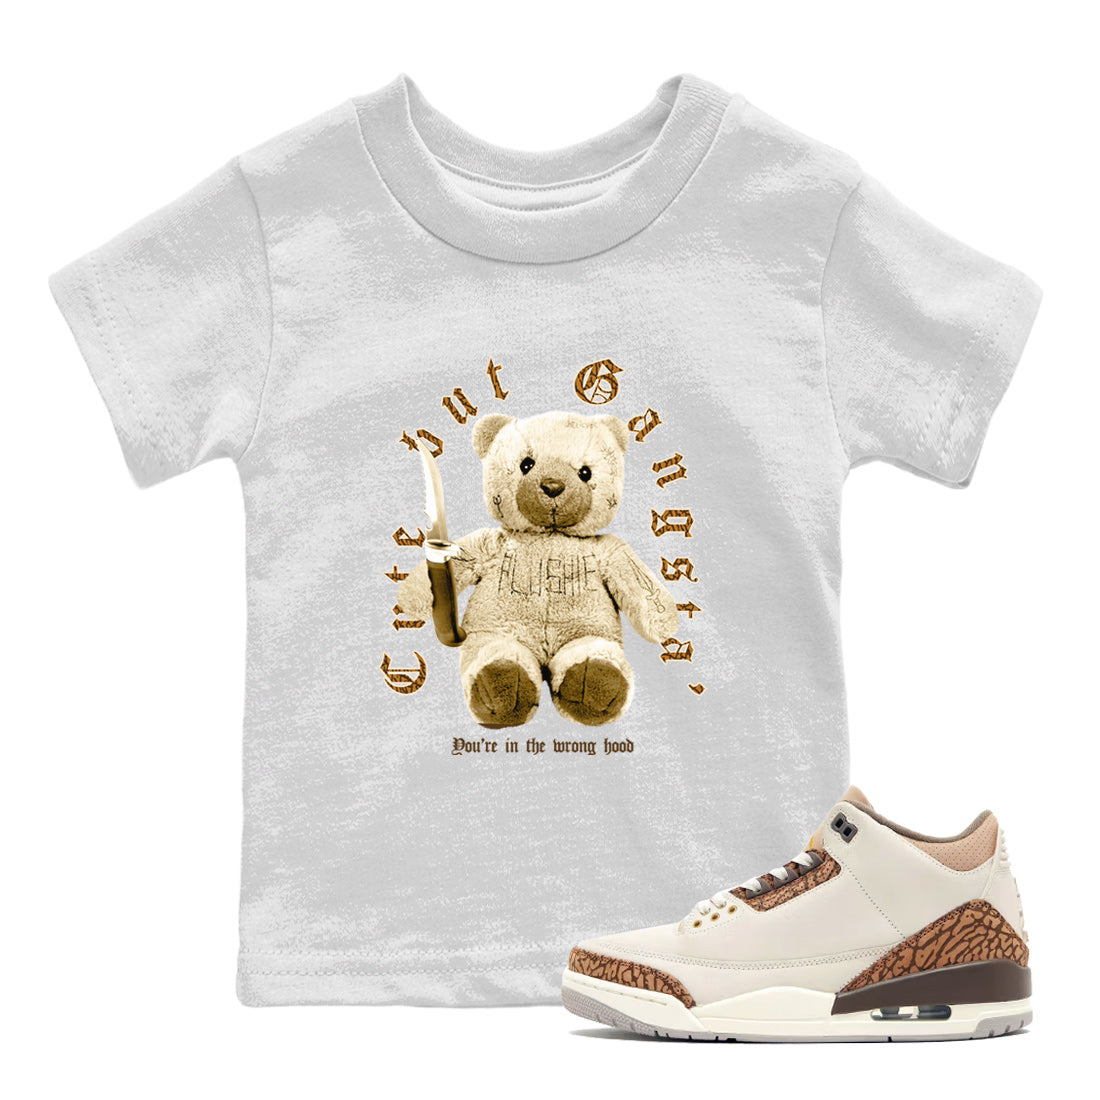 Jordan 3 Retro Palomino Sneaker Matching T-Shirt Cute Gangsta Sneaker Tees Air Jordan 3 Palomino Sneaker Release Tees Kids Shirts White 1